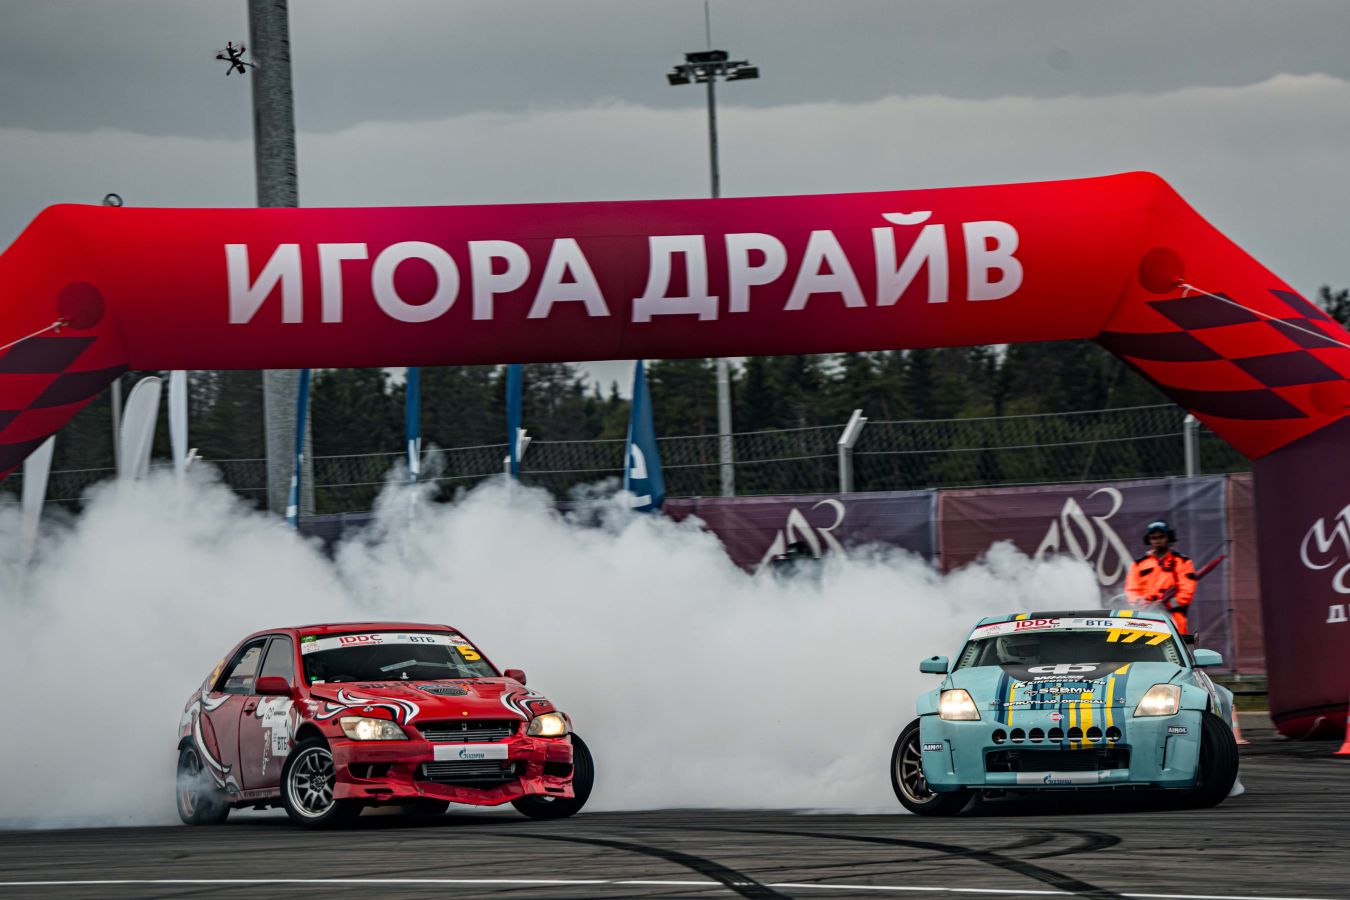 Финал Igora Drive Drift Challenge впервые пройдёт на главной трассе «Игора Драйв»